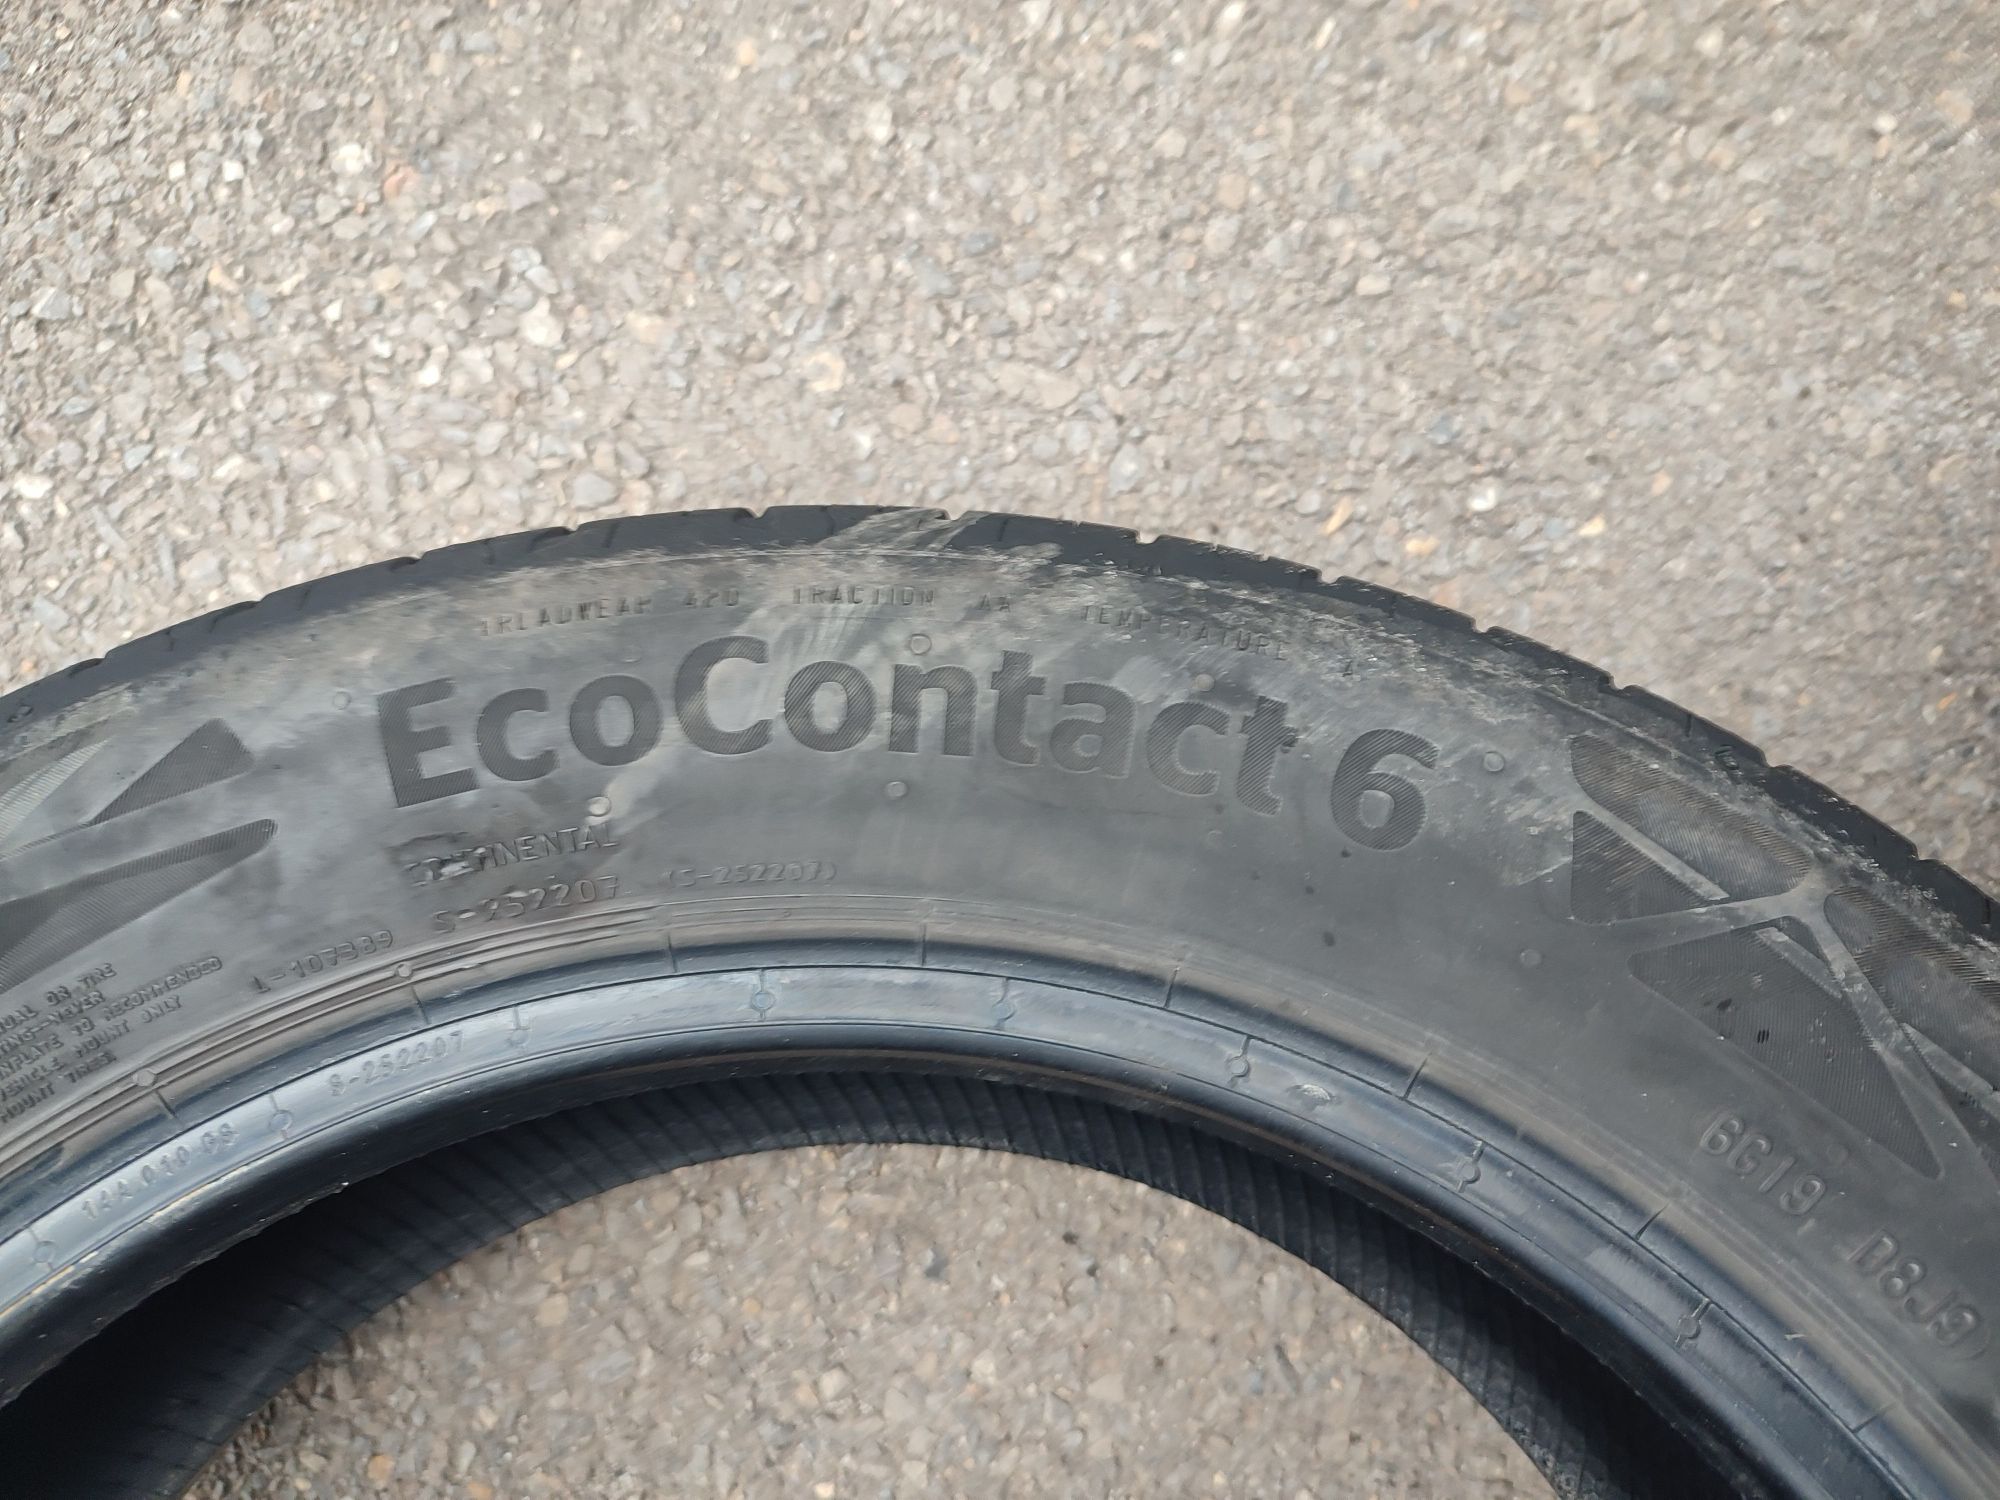 205/55/16" 4бр Continental eco contact 6,dot21г,6мм